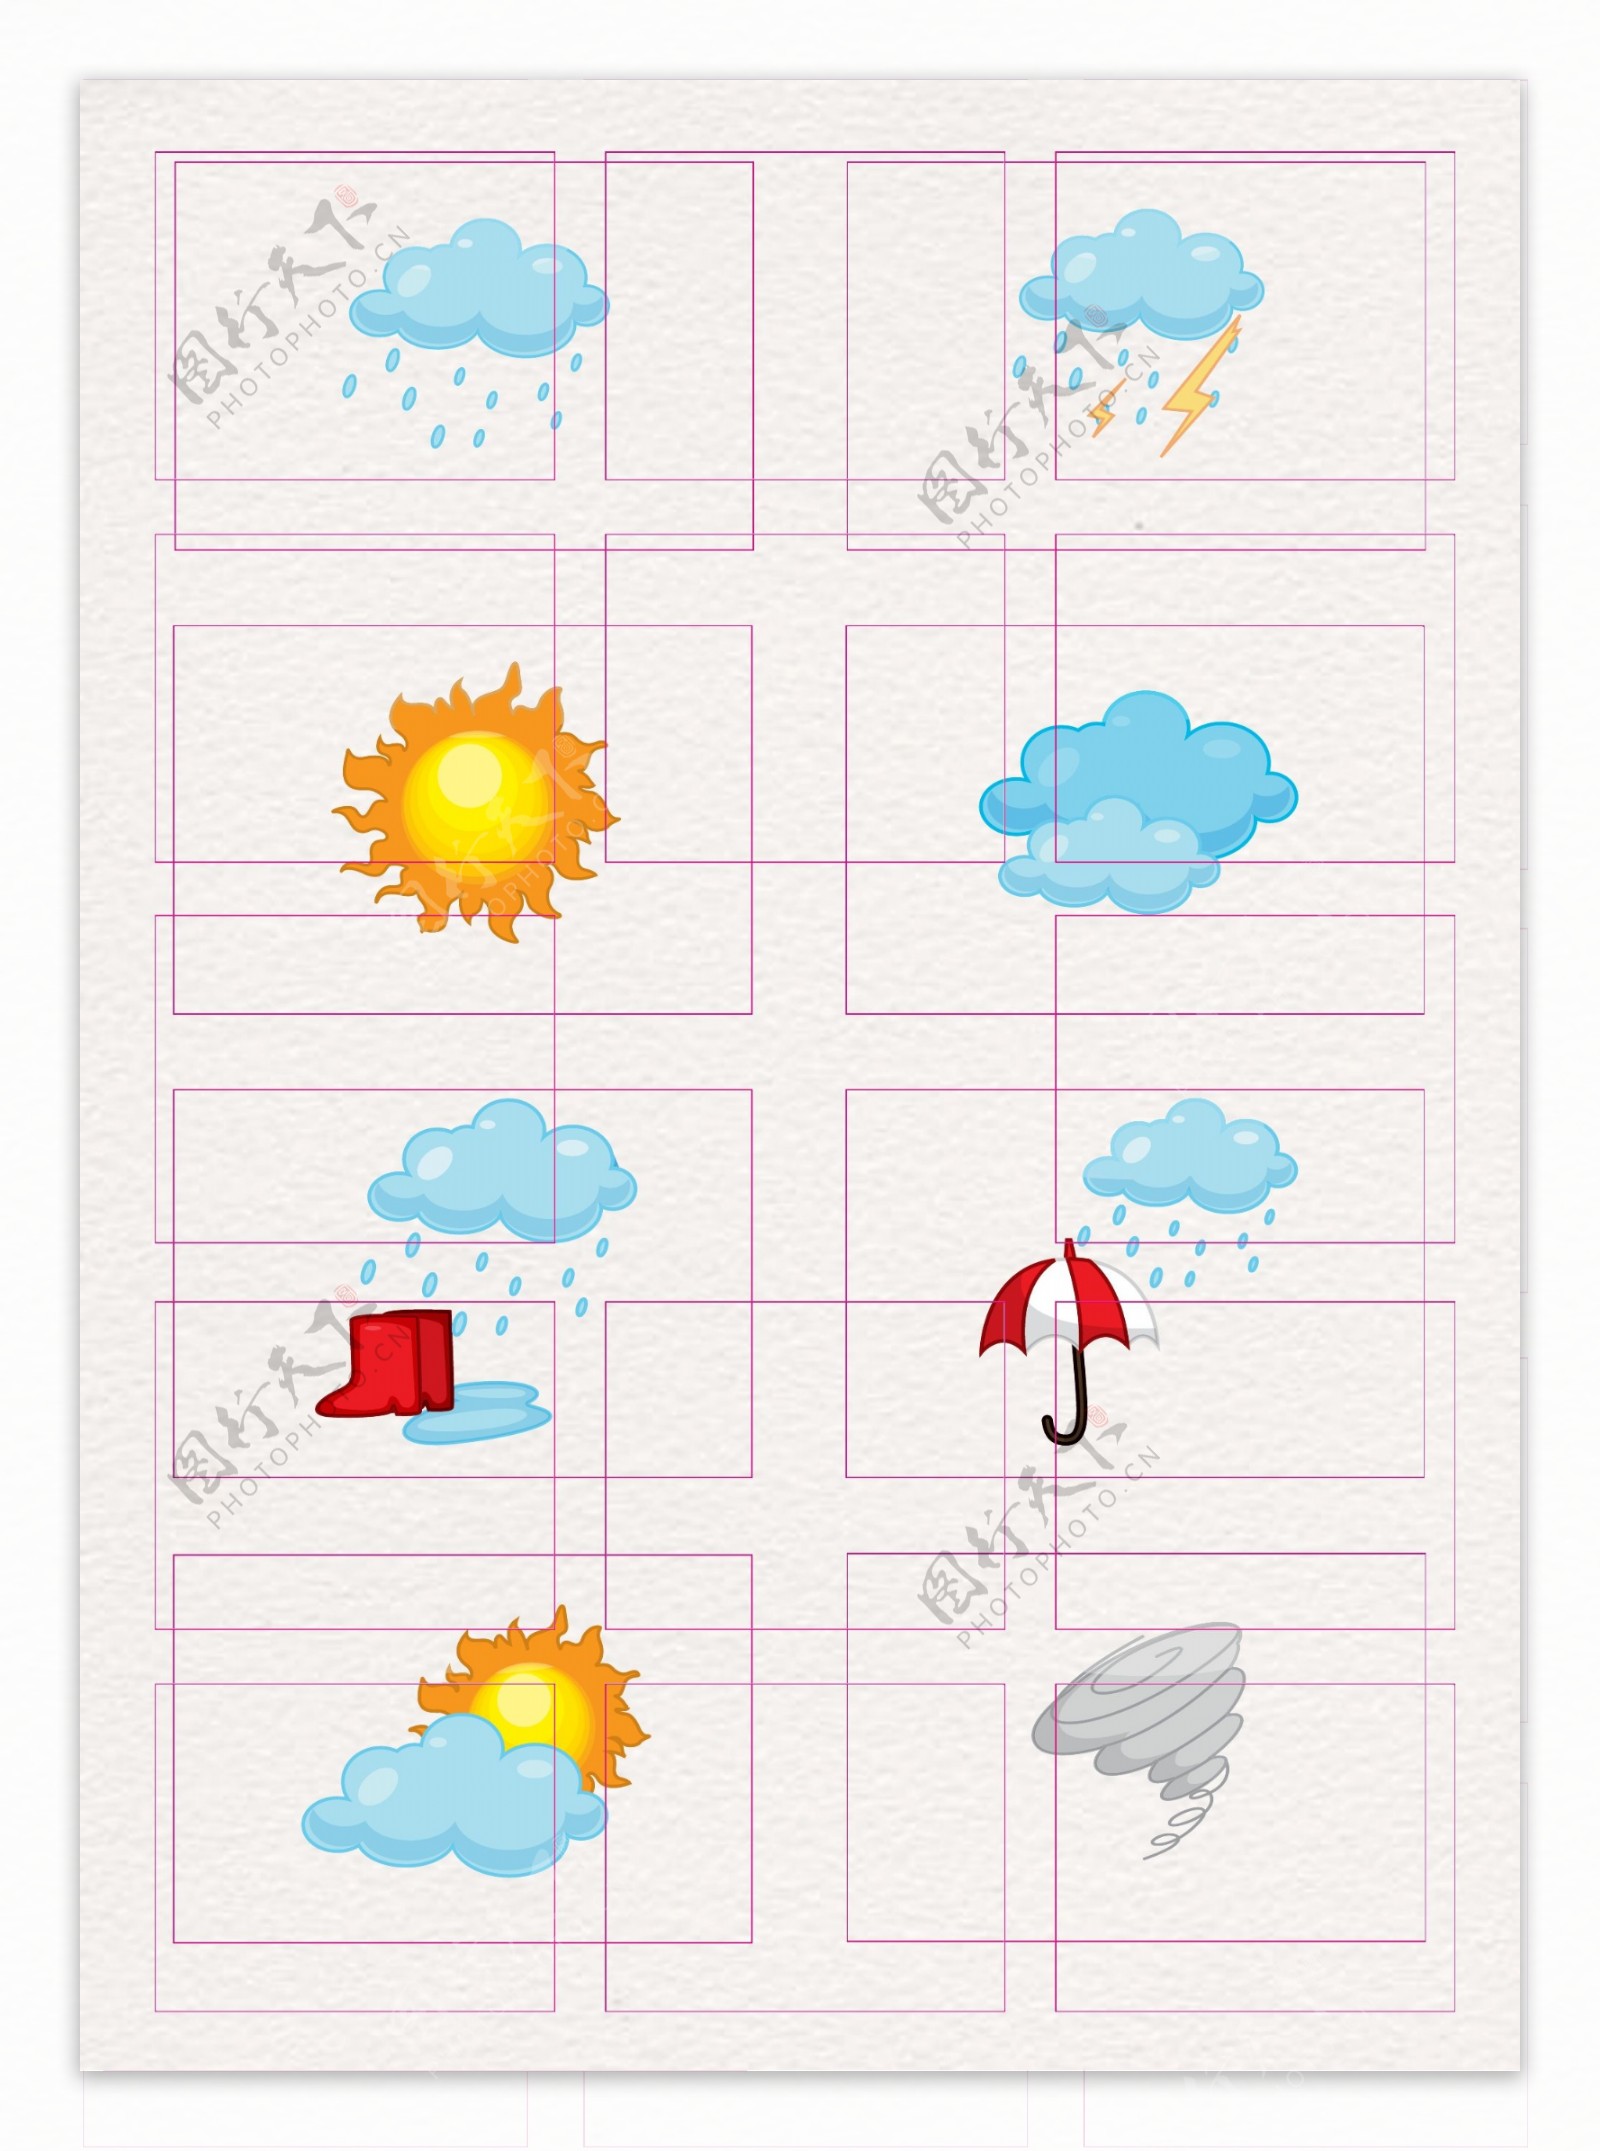 8组卡通天气预报图标手绘设计